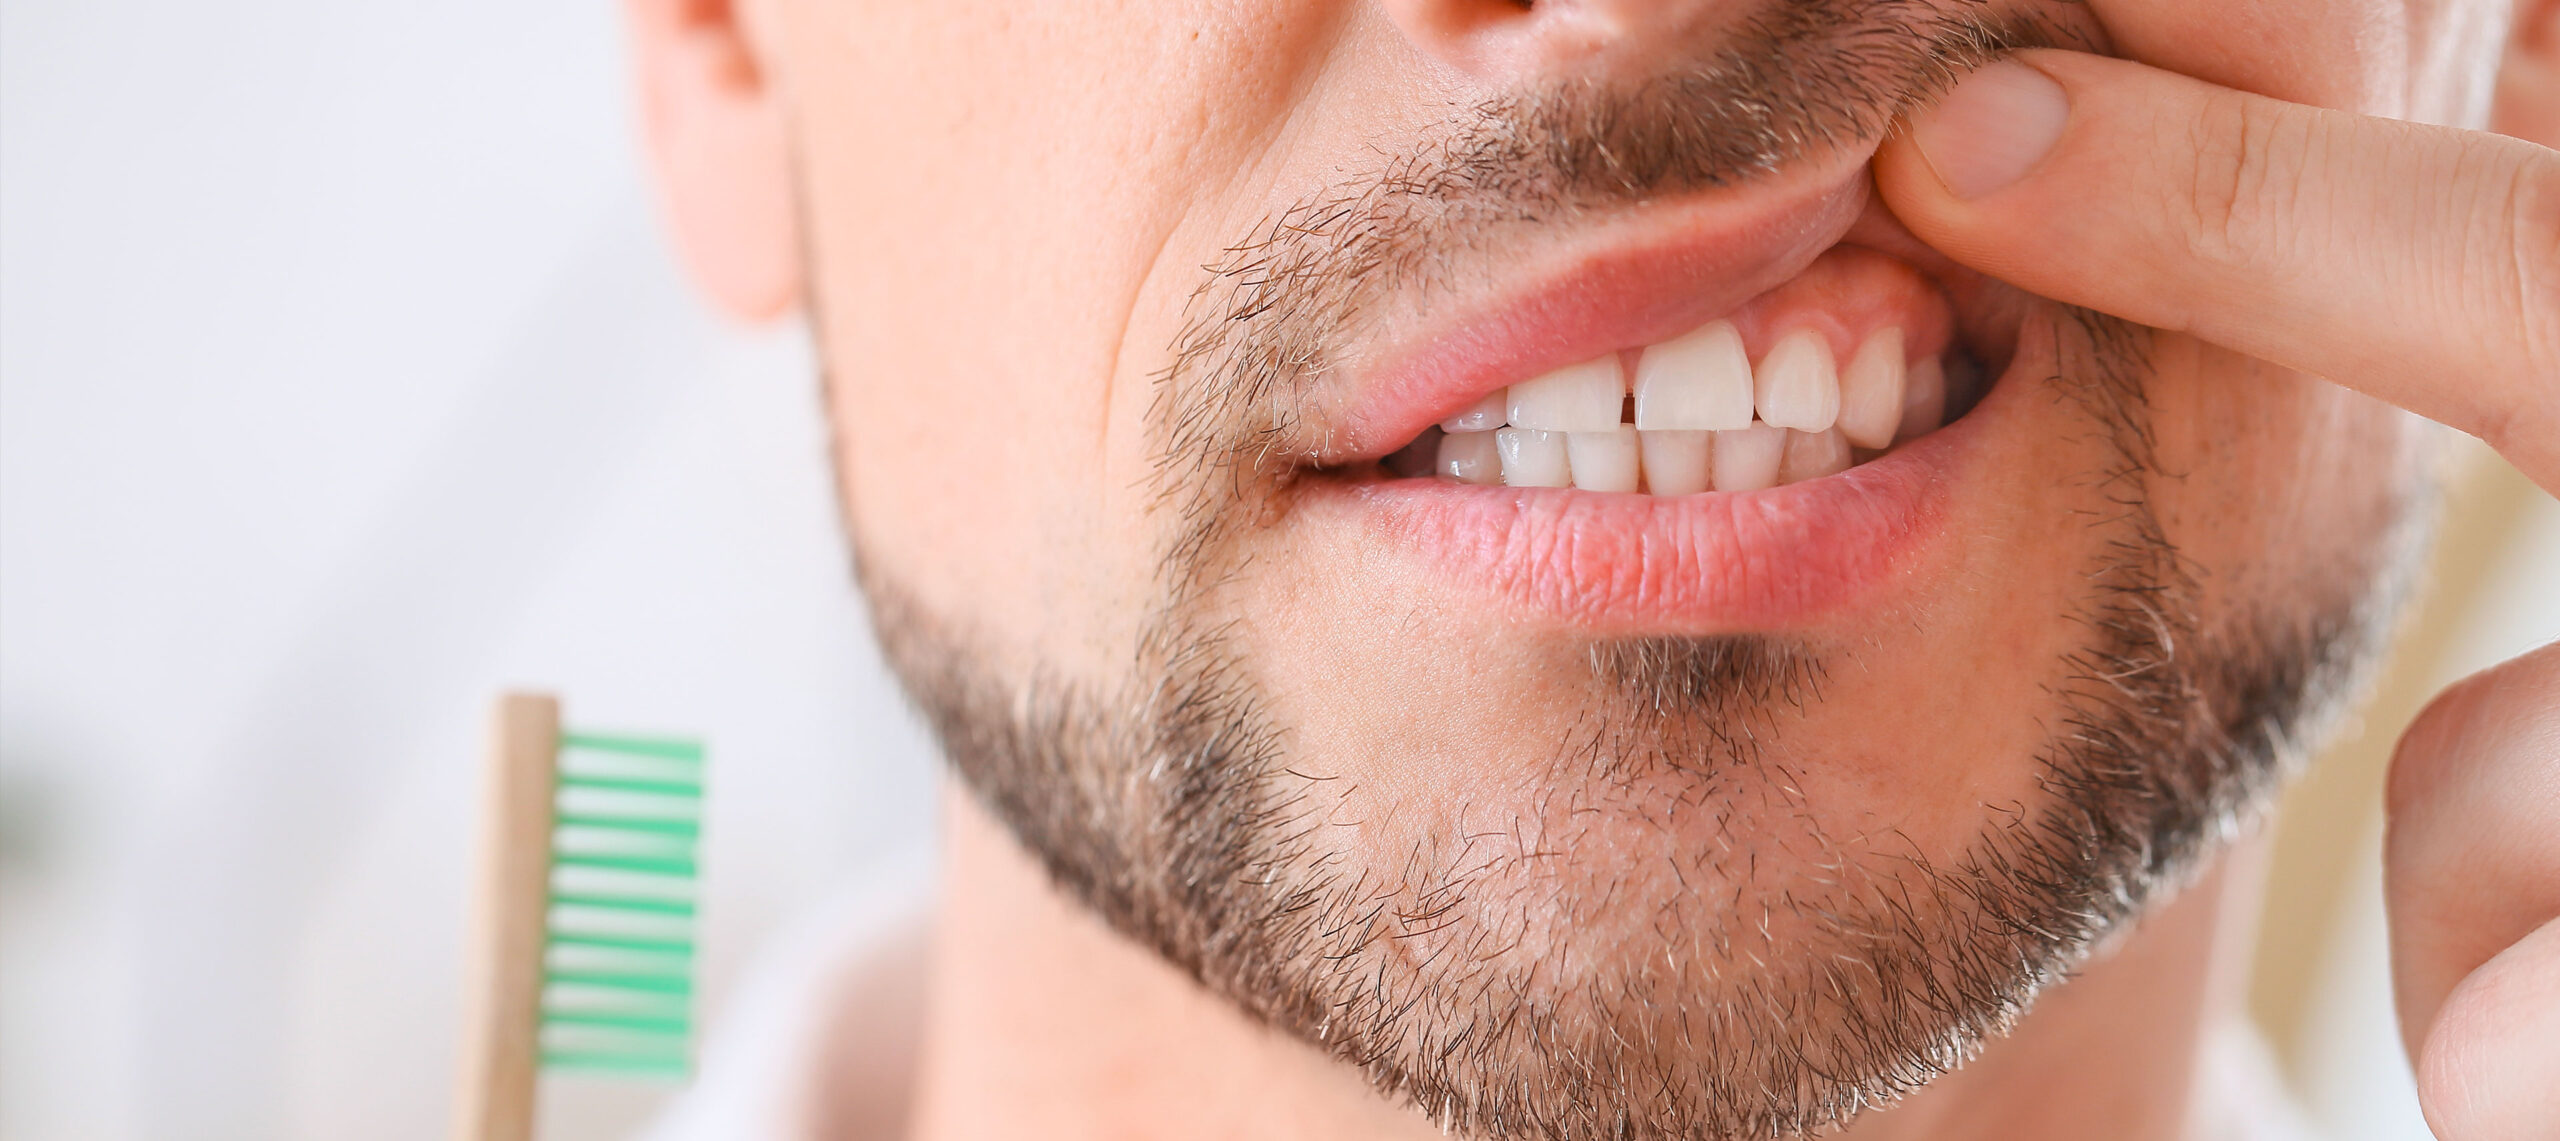 Gros plan de la bouche d'un homme barbu présentant une gencive irritée, illustrant la nécessité d'une greffe de gencive sur le site de la clinique dentaire Deslauriers Pissardo Jacques.